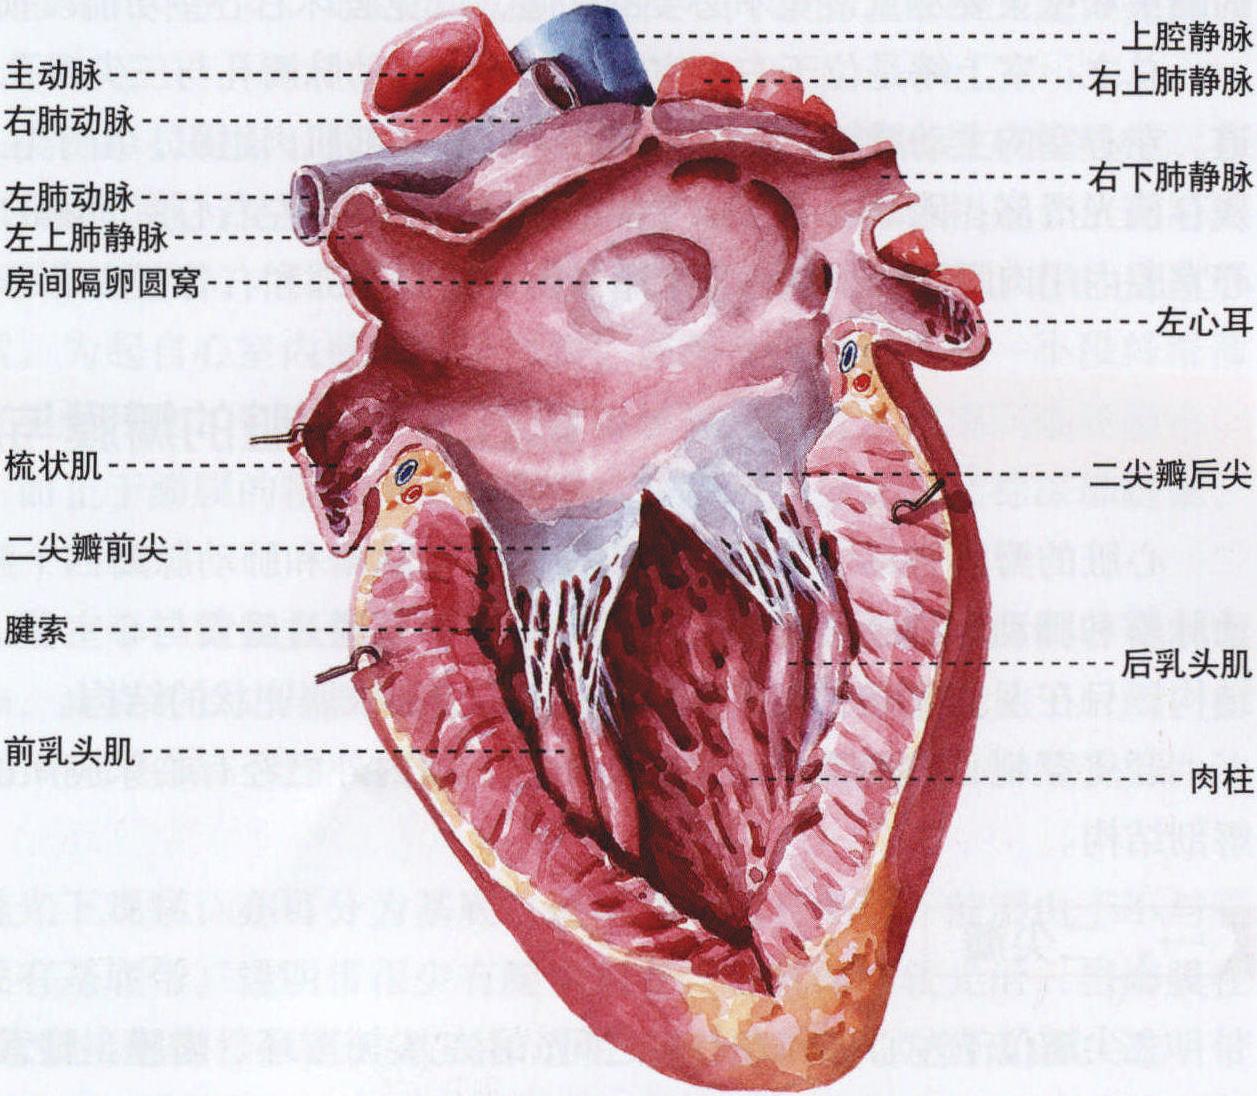 图376 心壁结构模式图-人体解剖组织学-医学